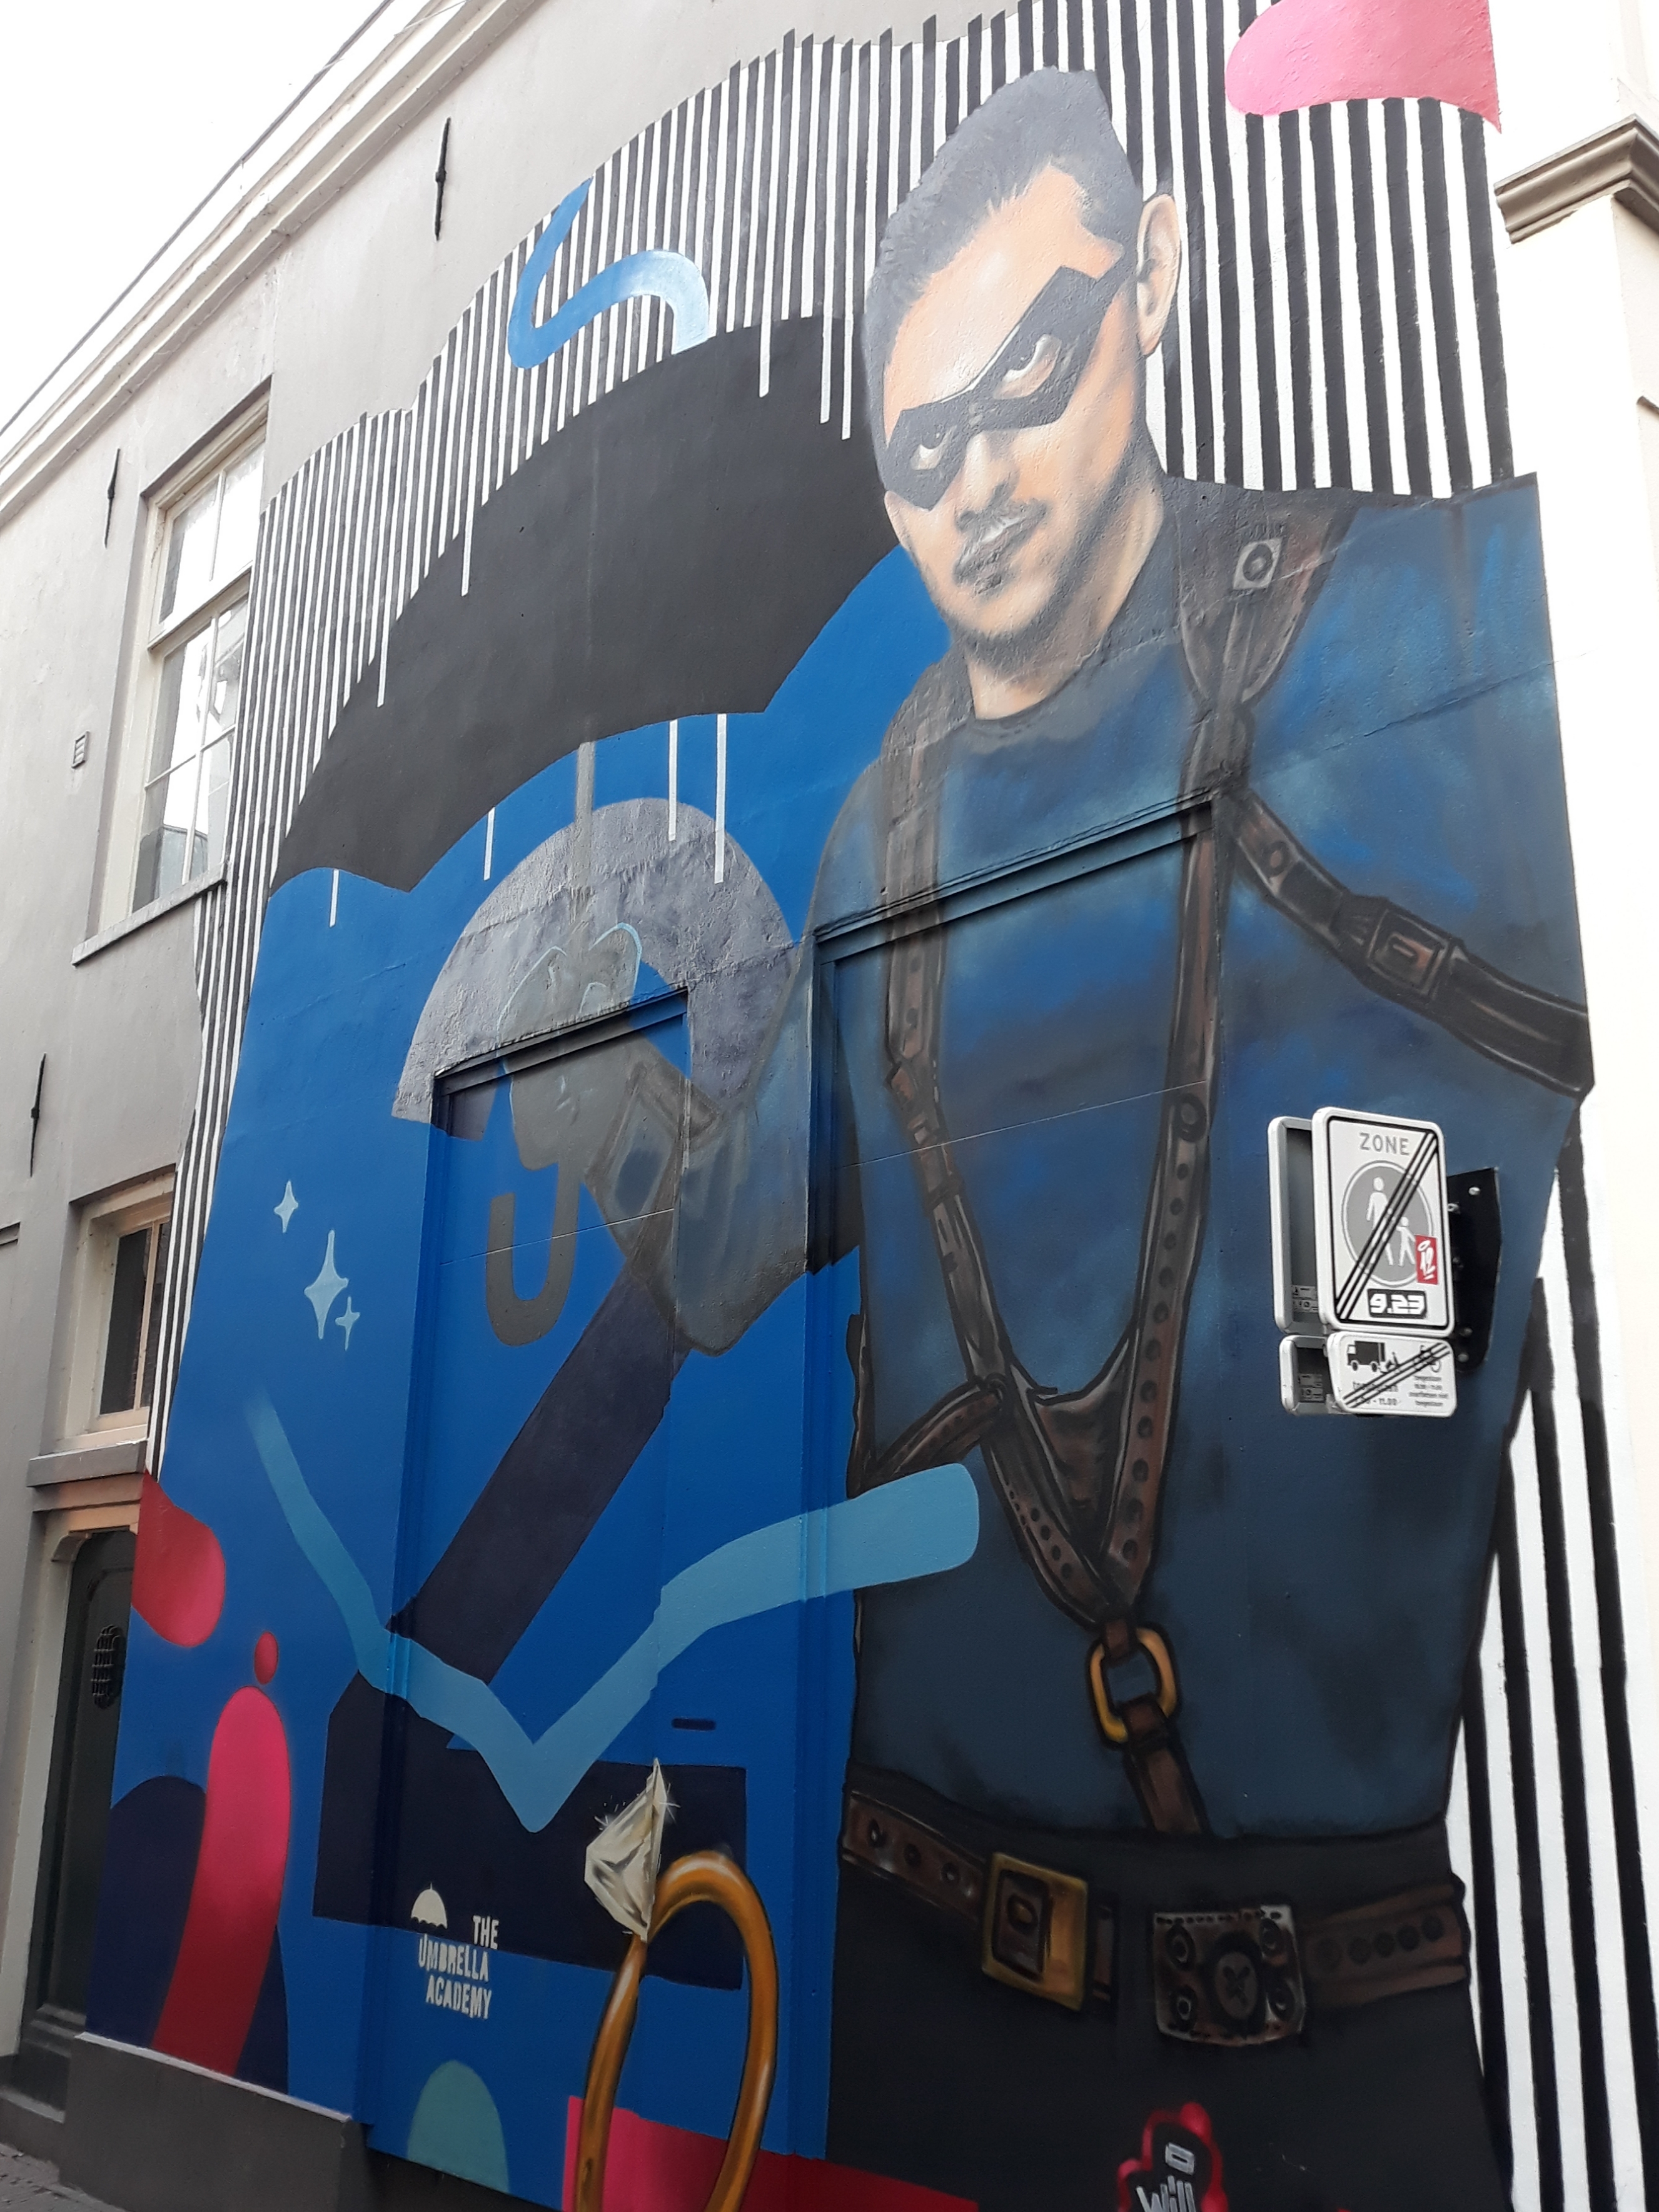 ‘Netflix’muur in Deventer nog even te zien